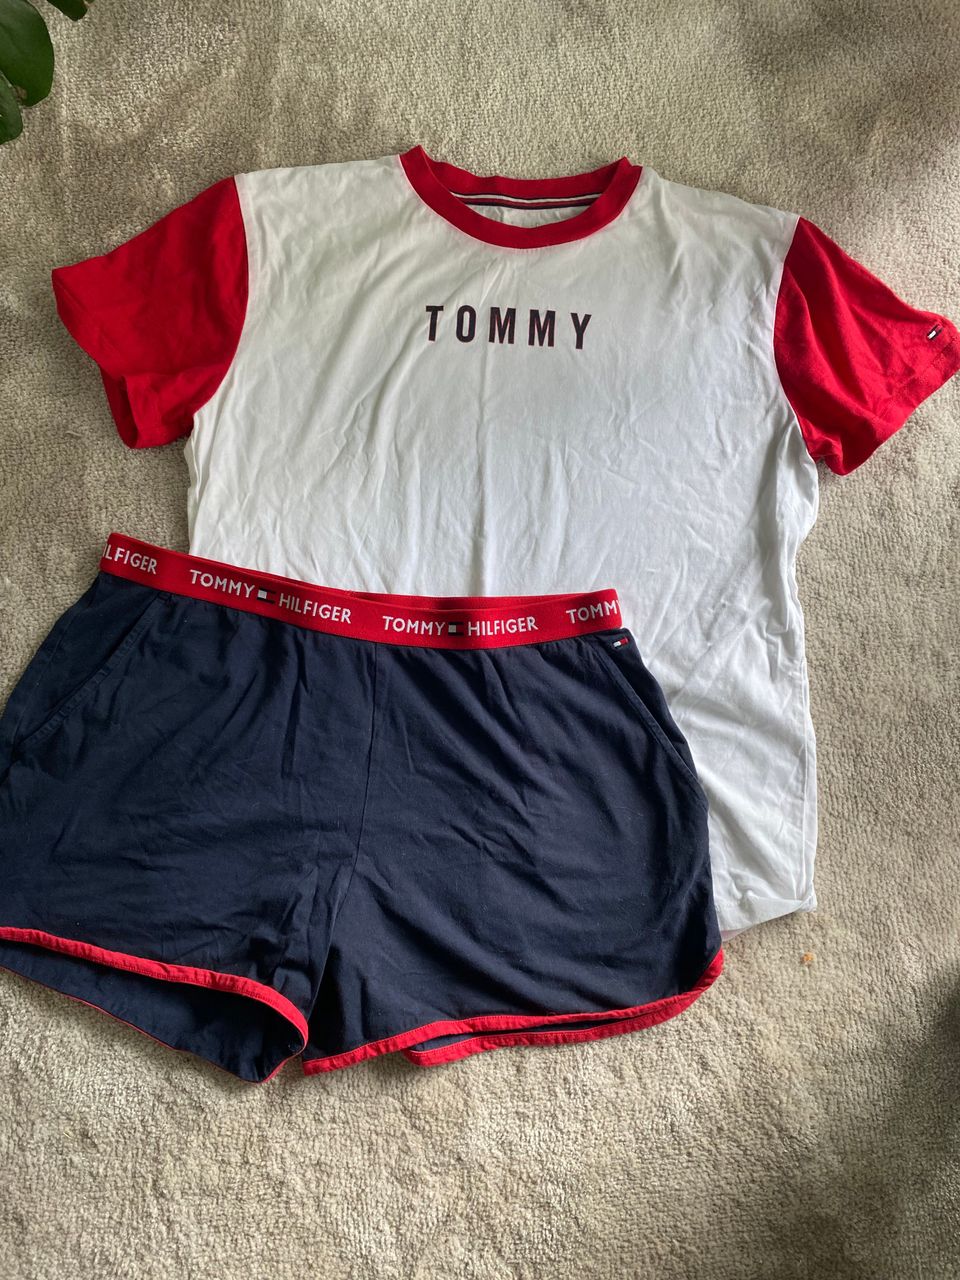 Tommy Hilfiger shortsipyjama